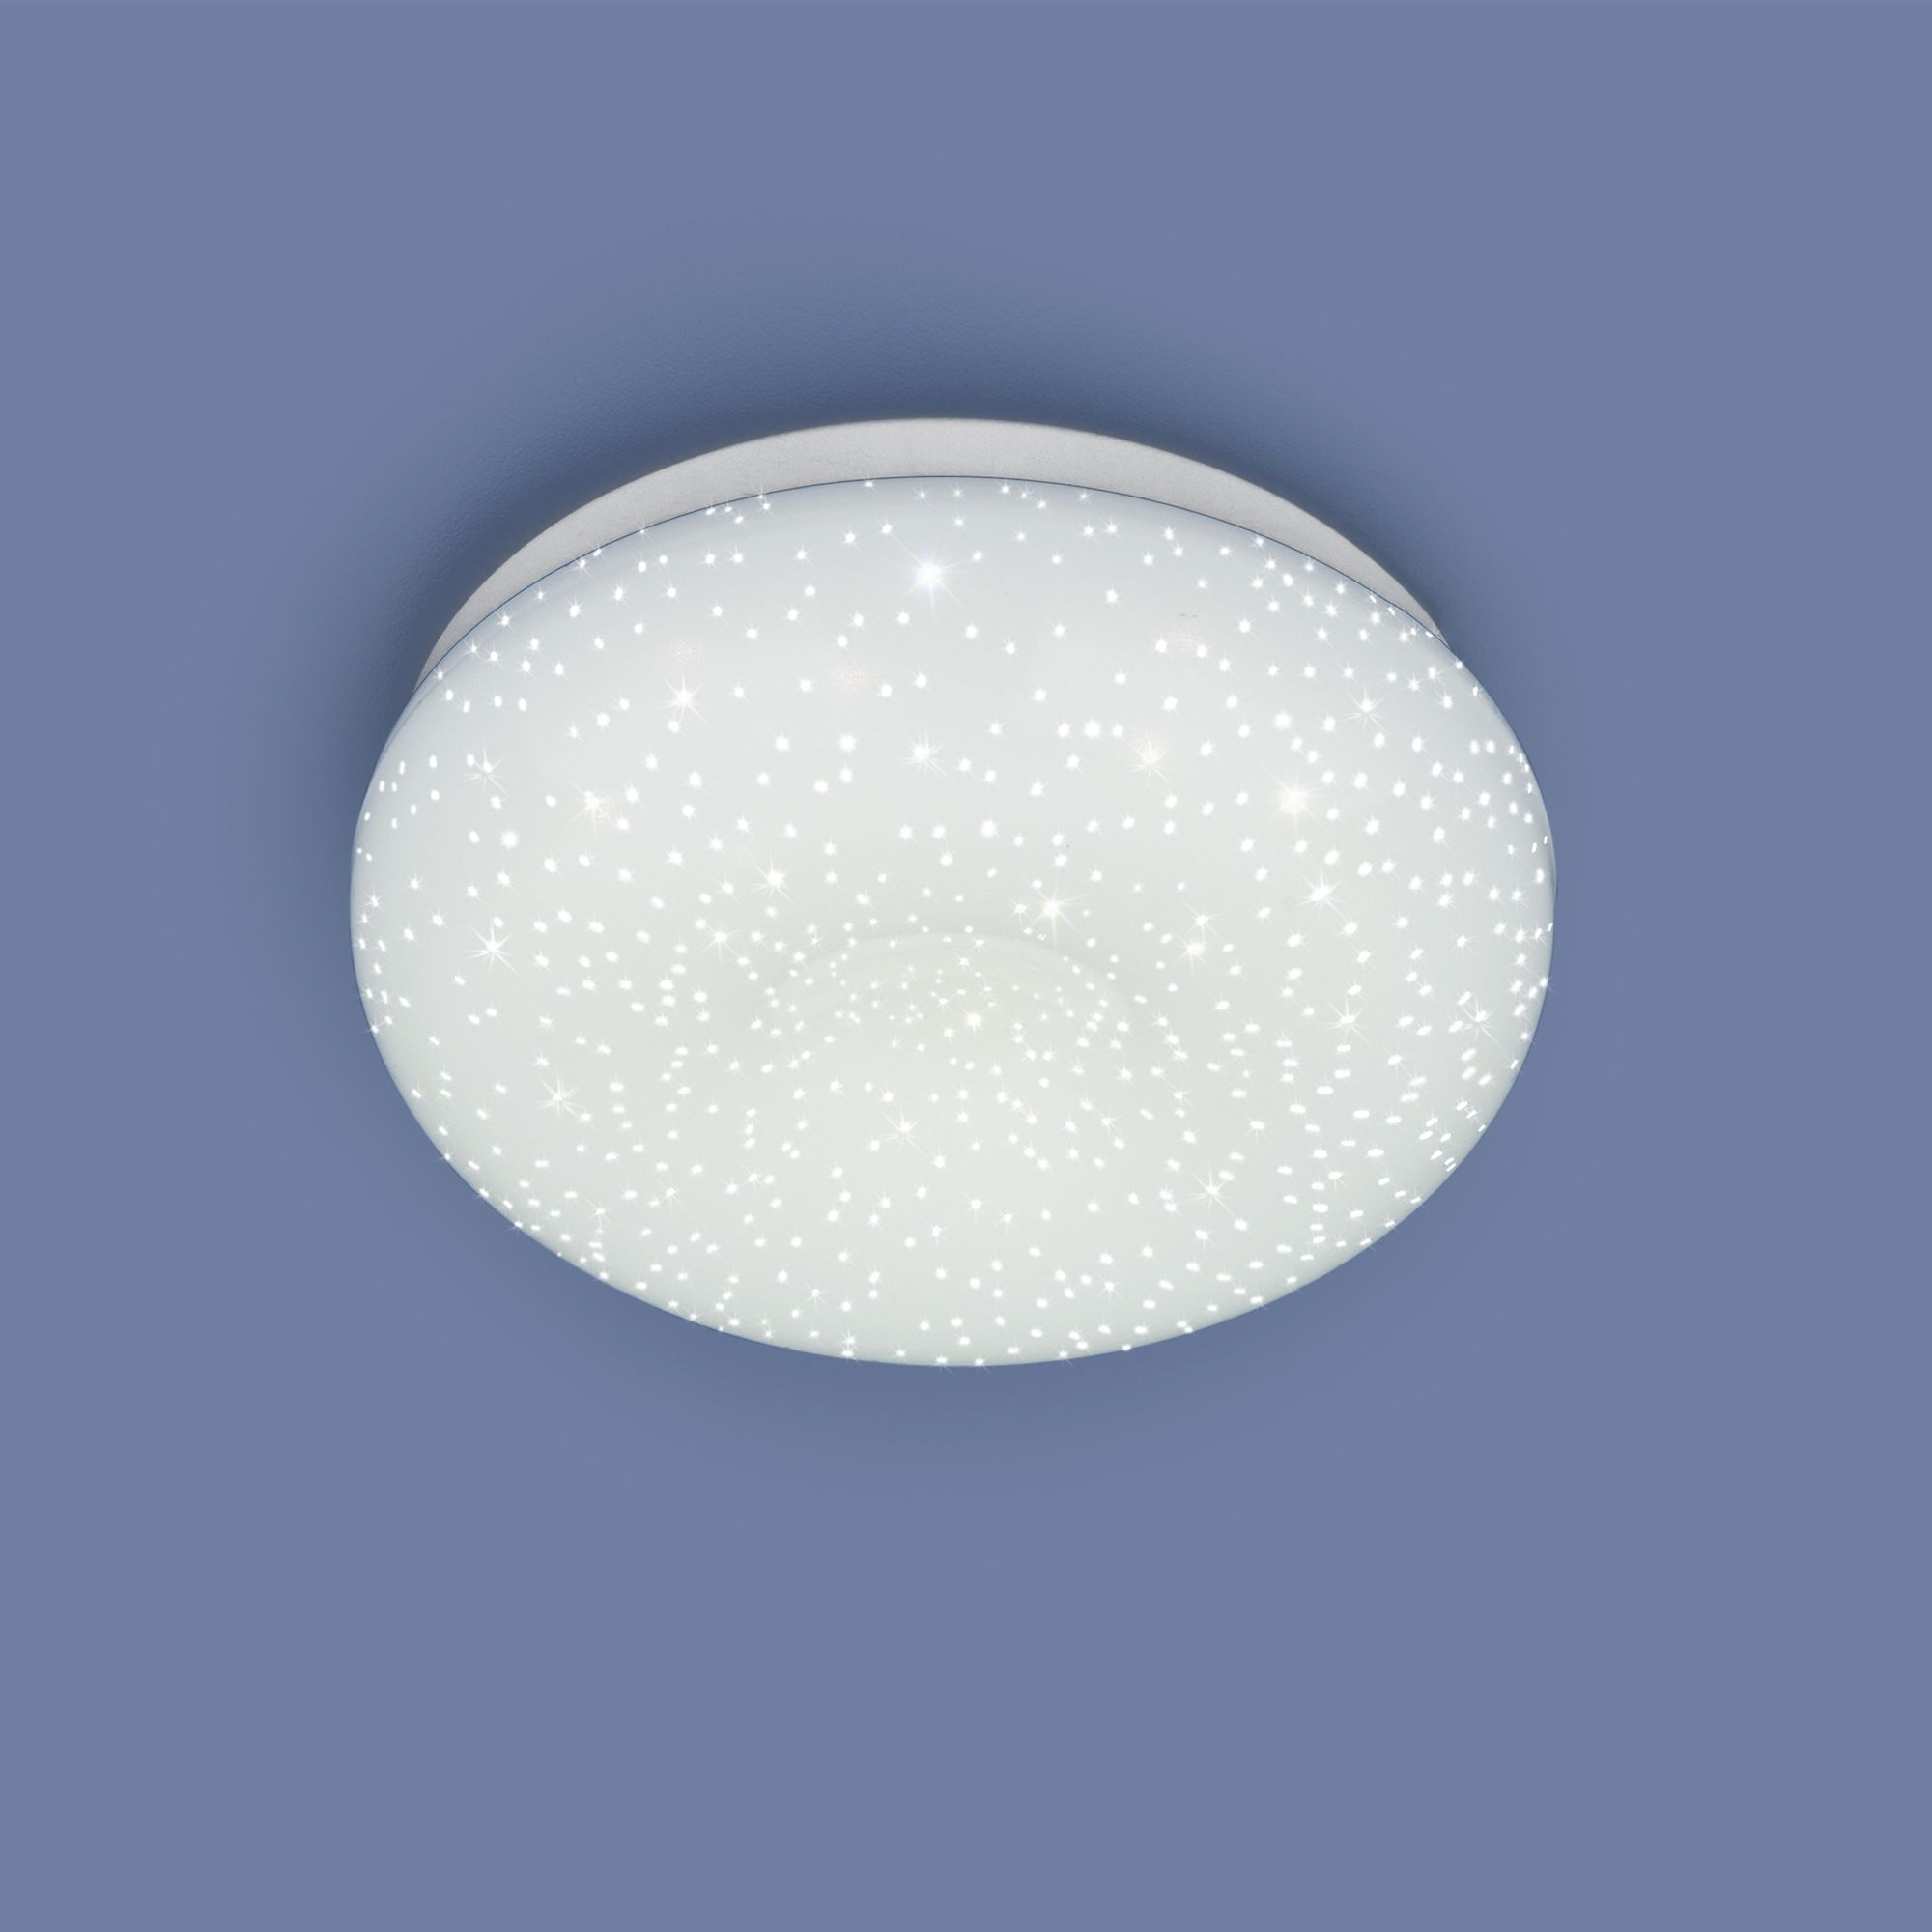 Встраиваемый потолочный светодиодный светильник 9910 LED 8W WH белый. Фото 2